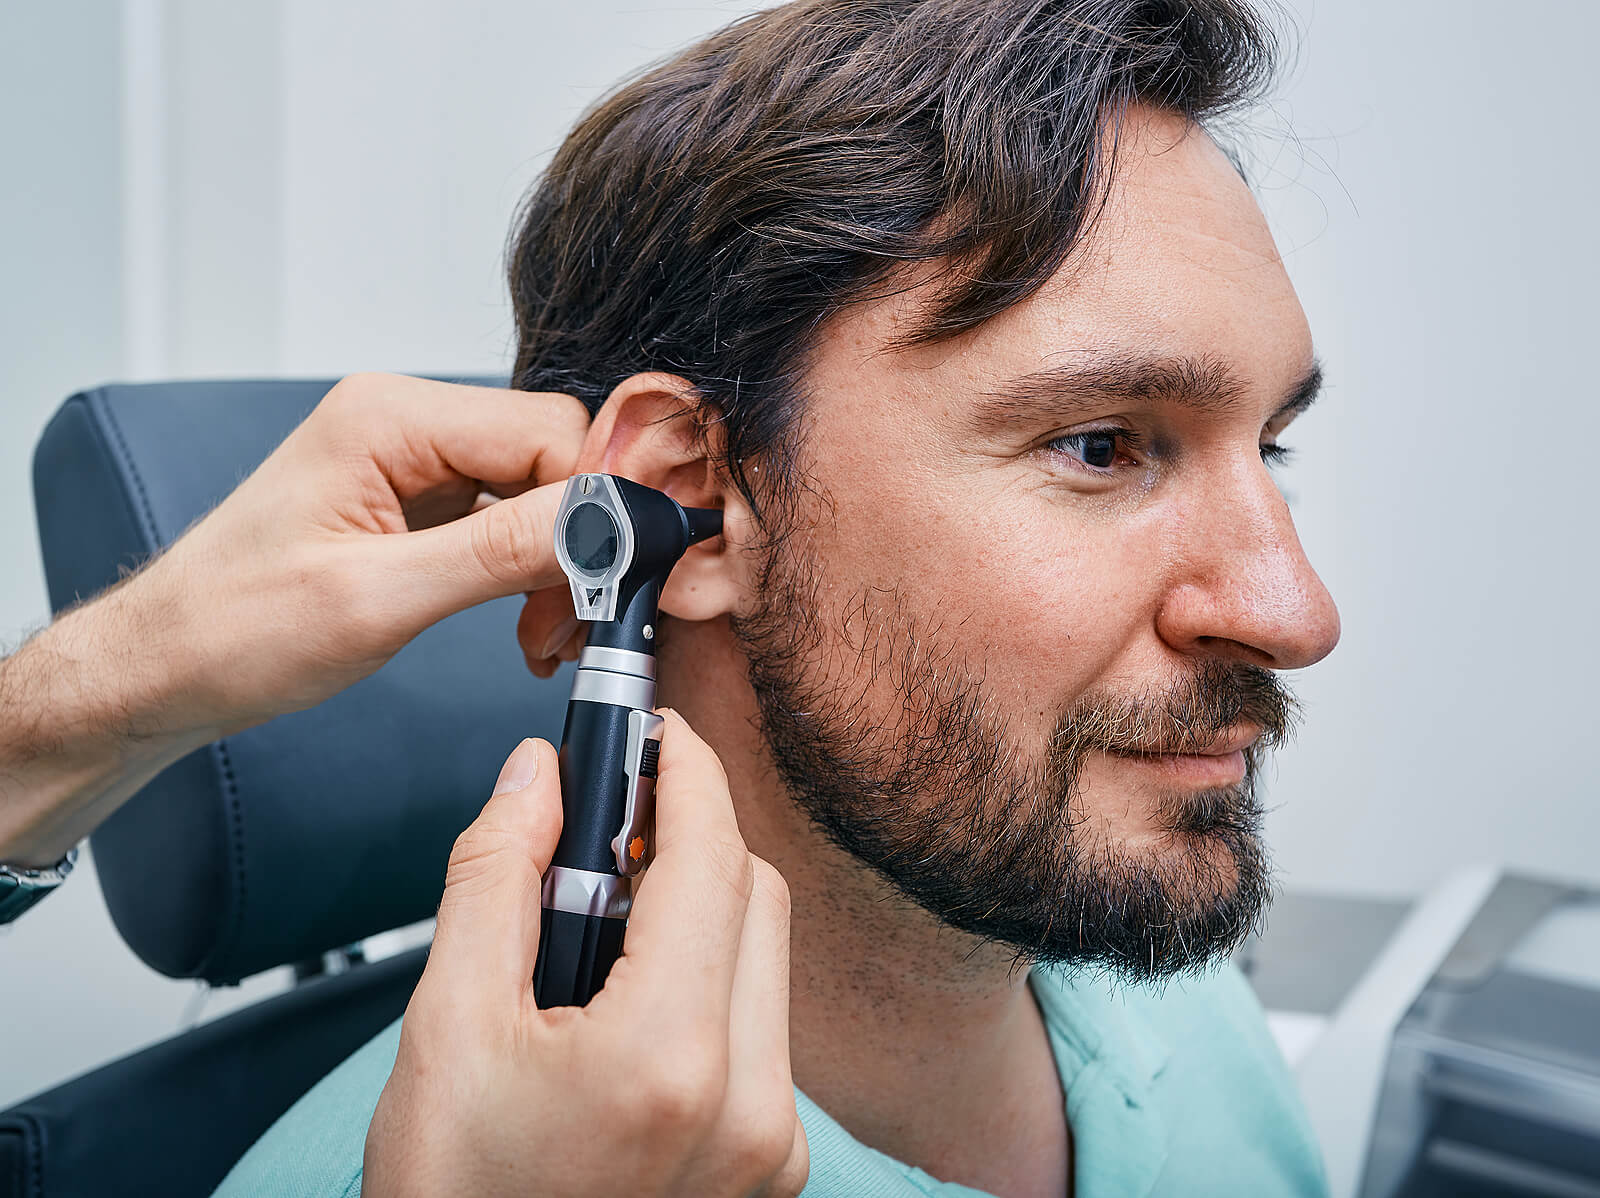 otoscope exam of ear